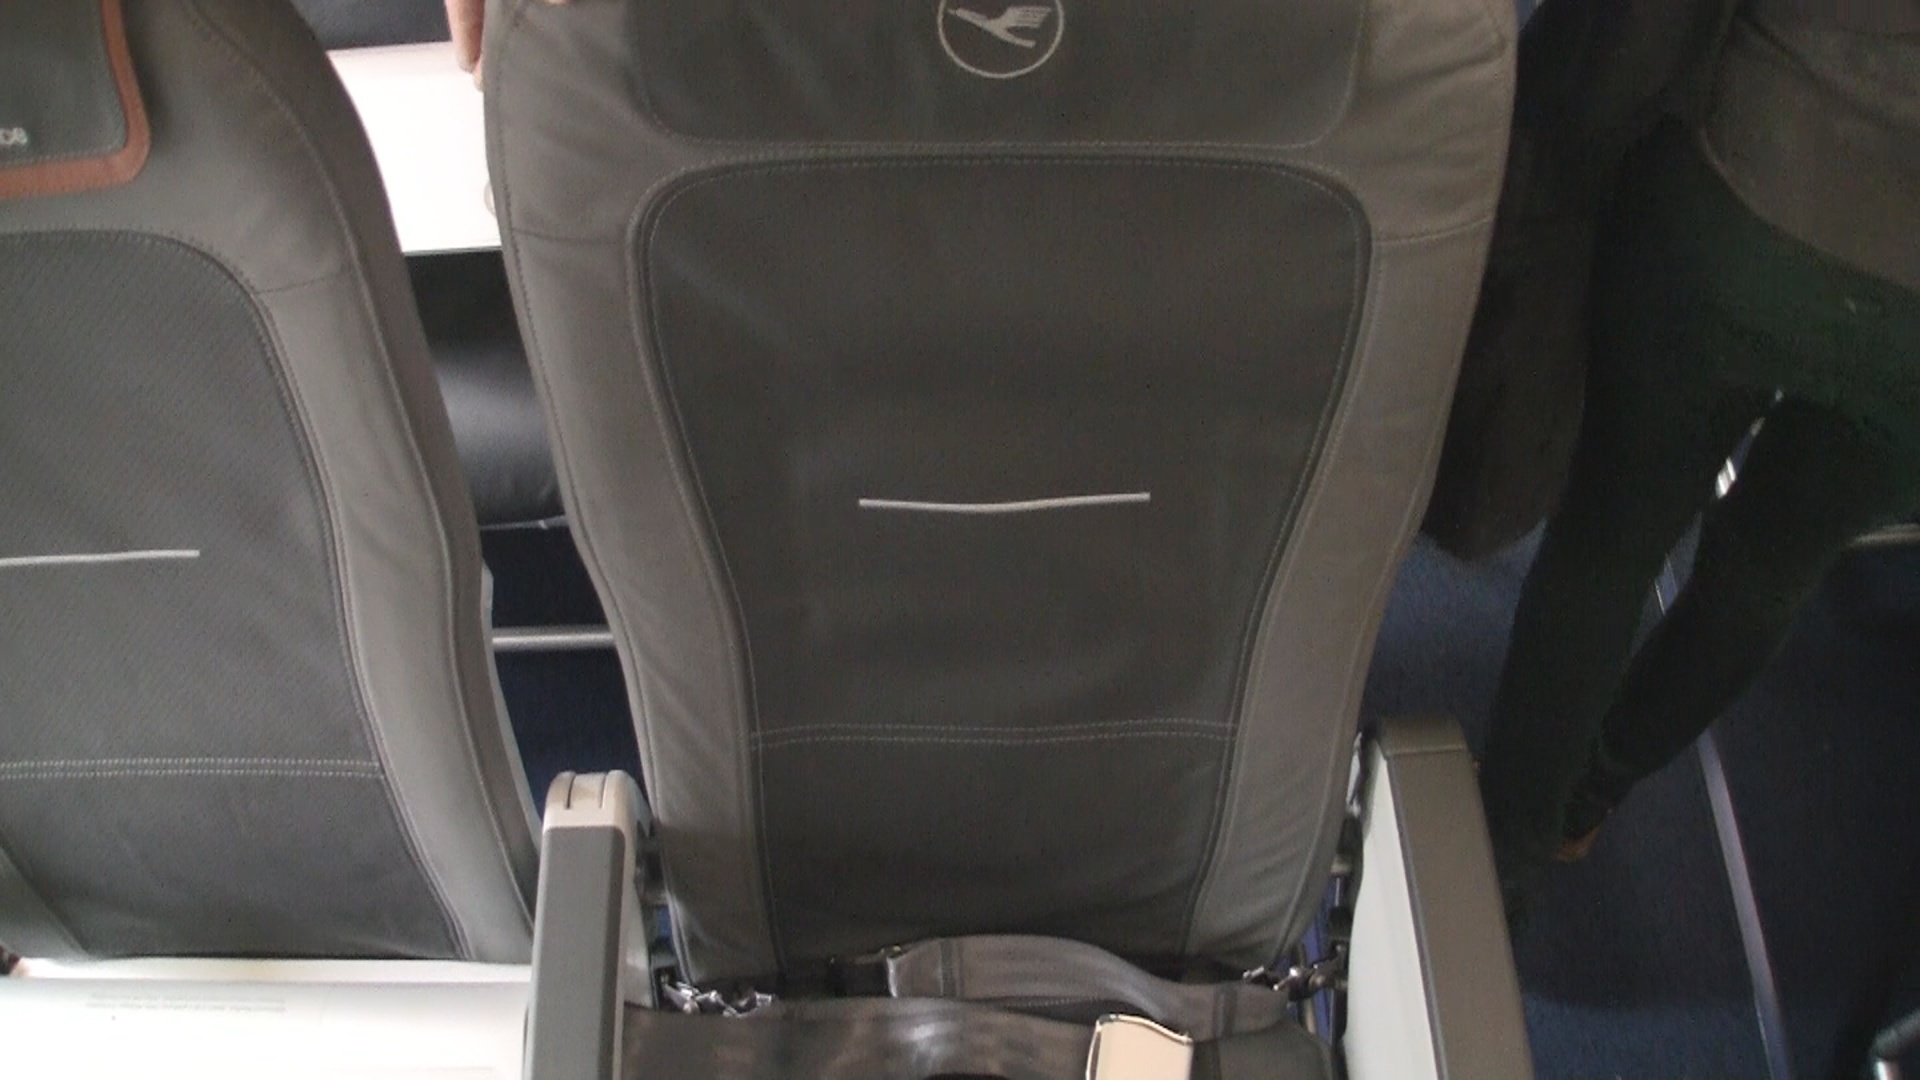 Video | Lufthansa Business Class A321 - Seat 2D - modhop.com